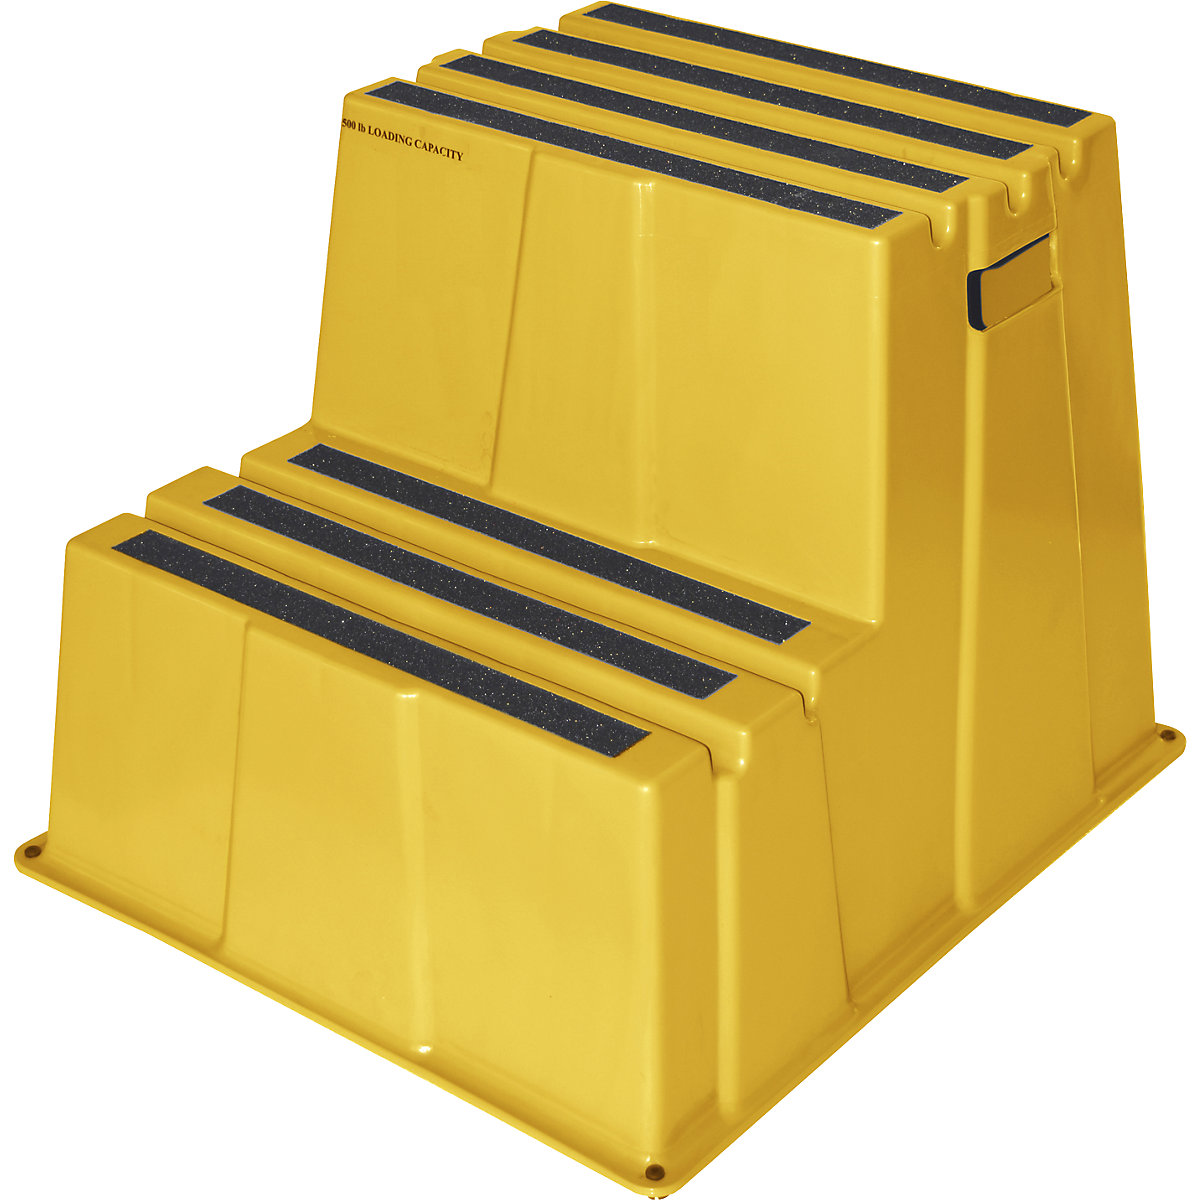 Scară din plastic cu trepte antiderapante – Twinco, capacitate portantă 150 kg, 2 trepte, galben-8